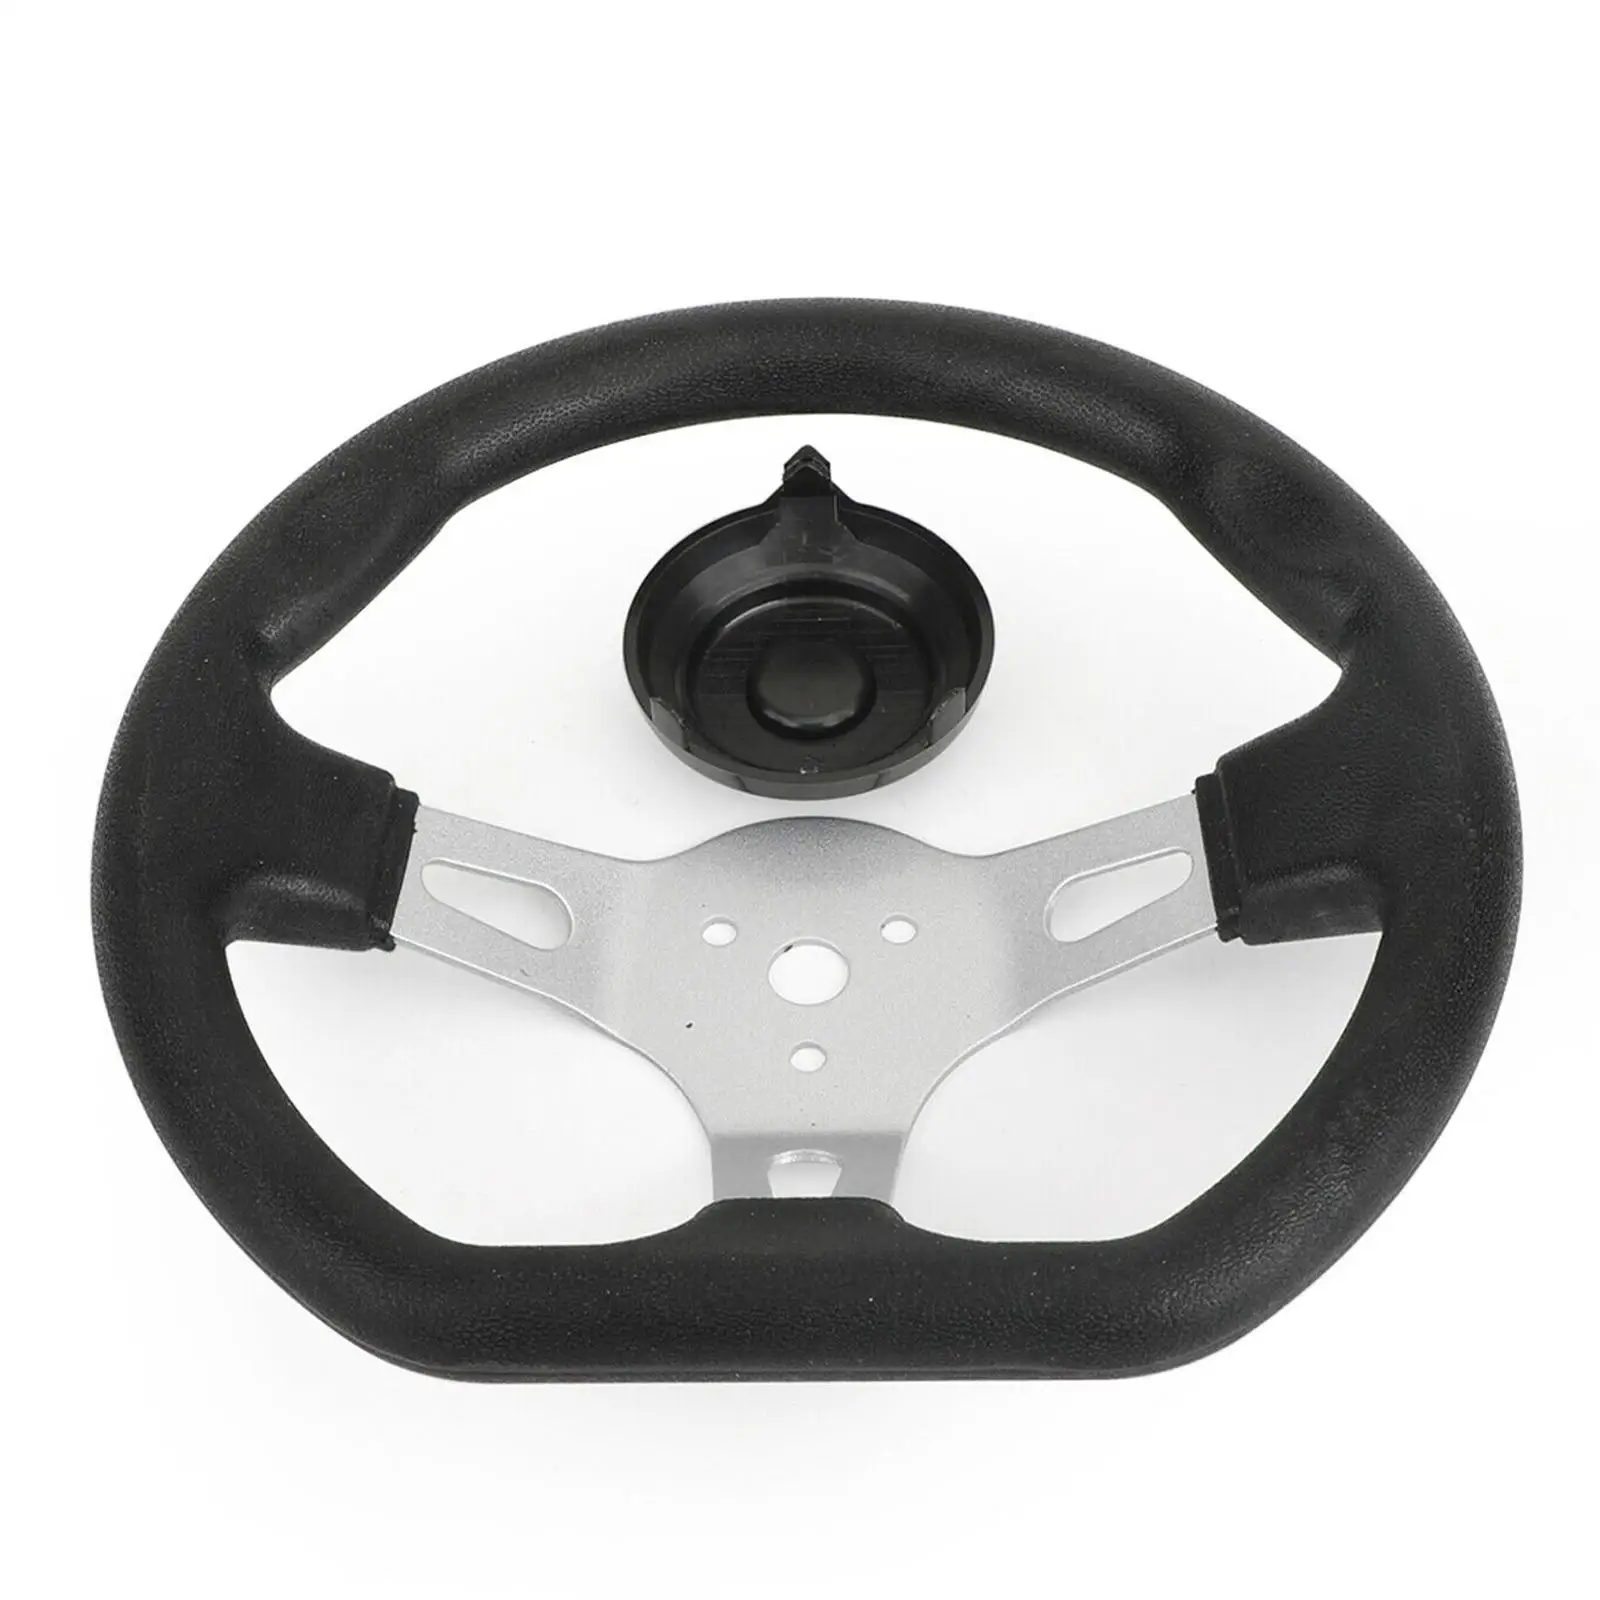 

Универсальное 3-спицевое Рулевое колесо для карт, скутеров, каратинга, 270 мм/10,6 дюйма